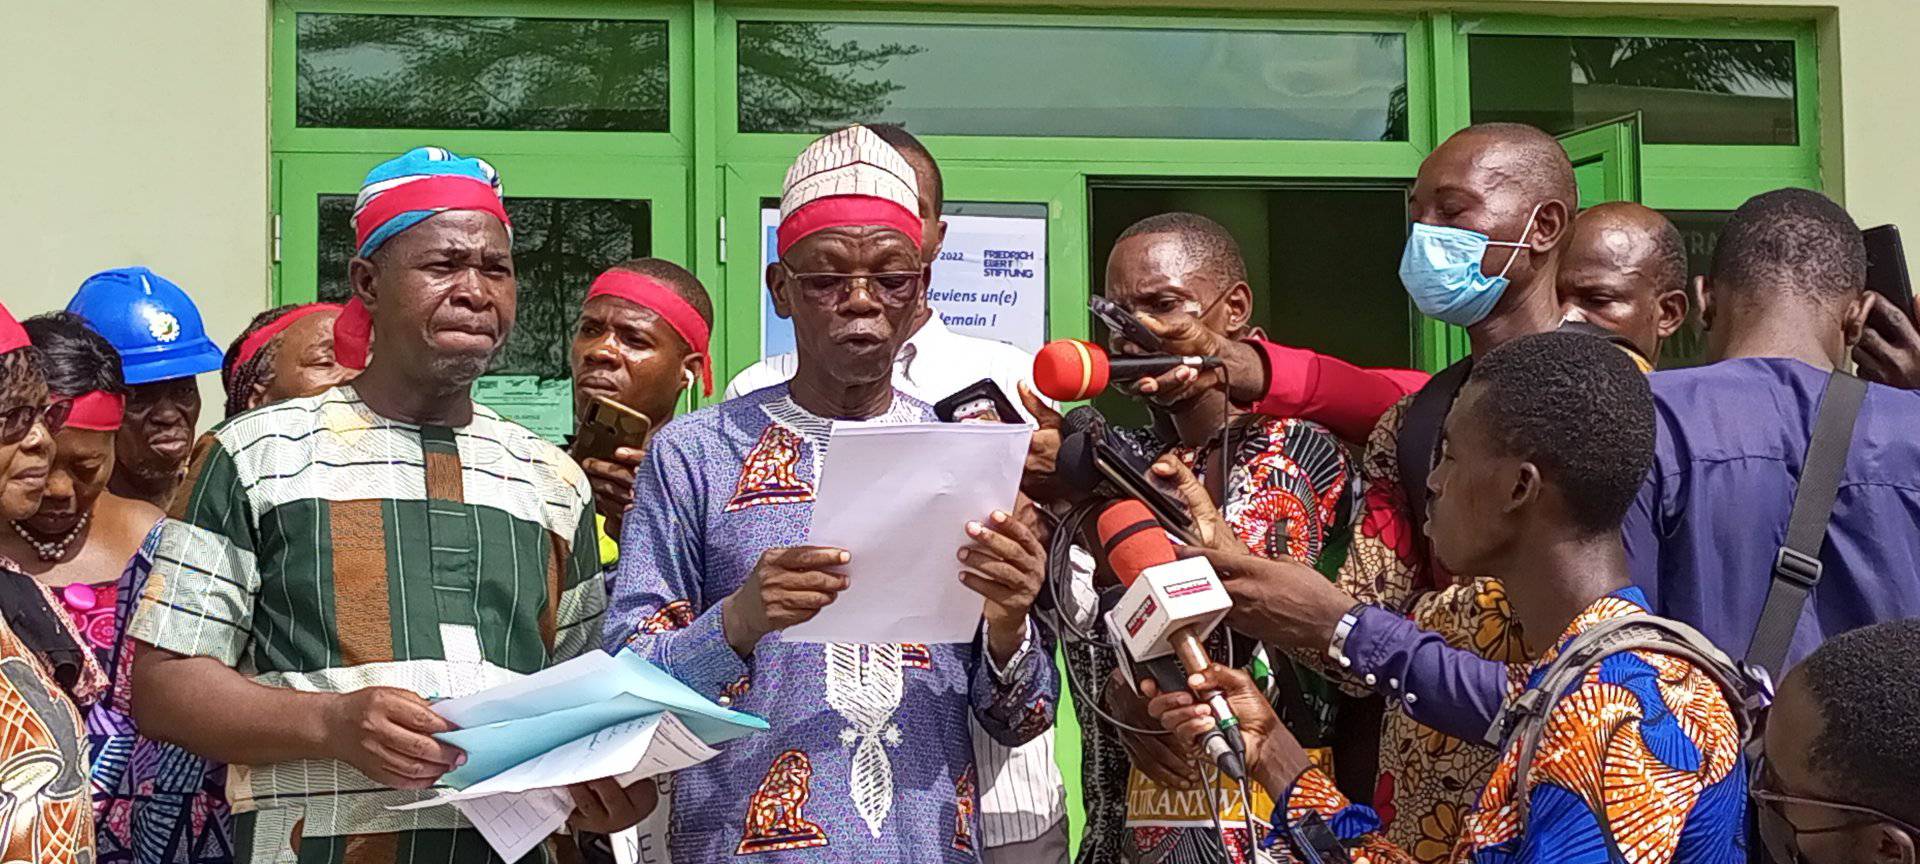 Bénin : La FéSen et la CSTB vont chauffer le coin le 17 août prochain